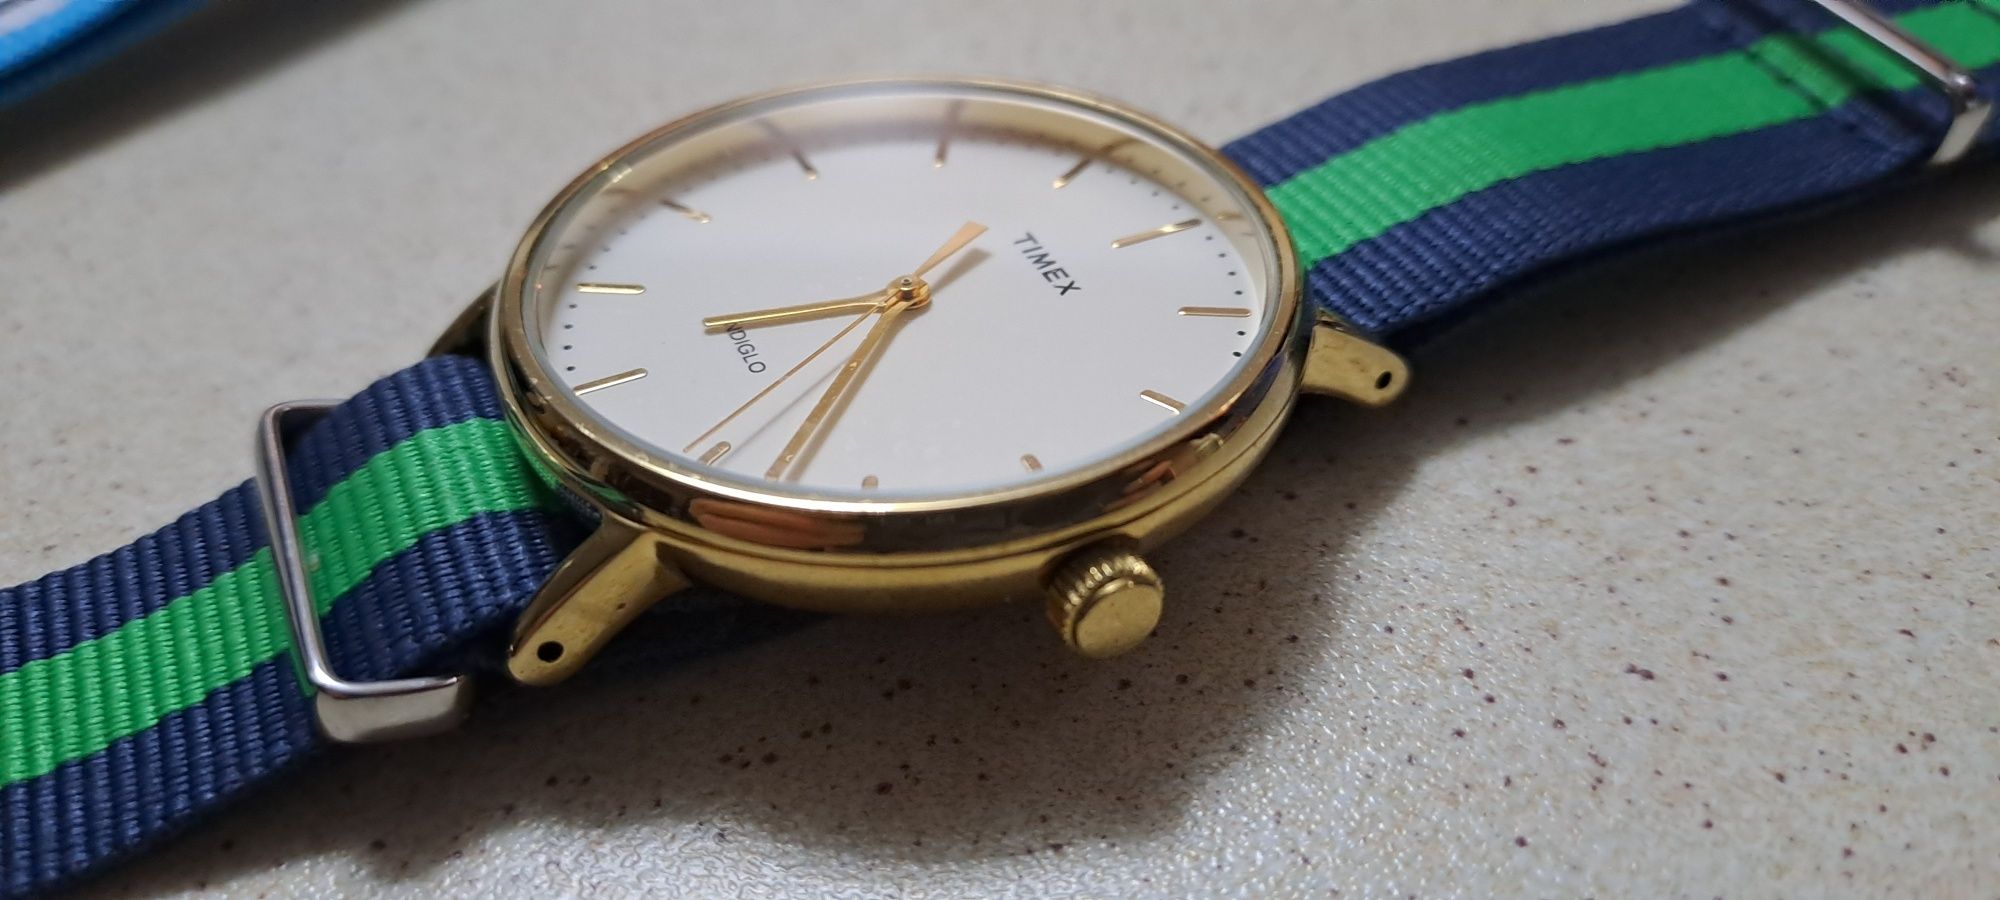 Sprzedam zegarek Timex Weekender stan idealny drugi pasek gratis